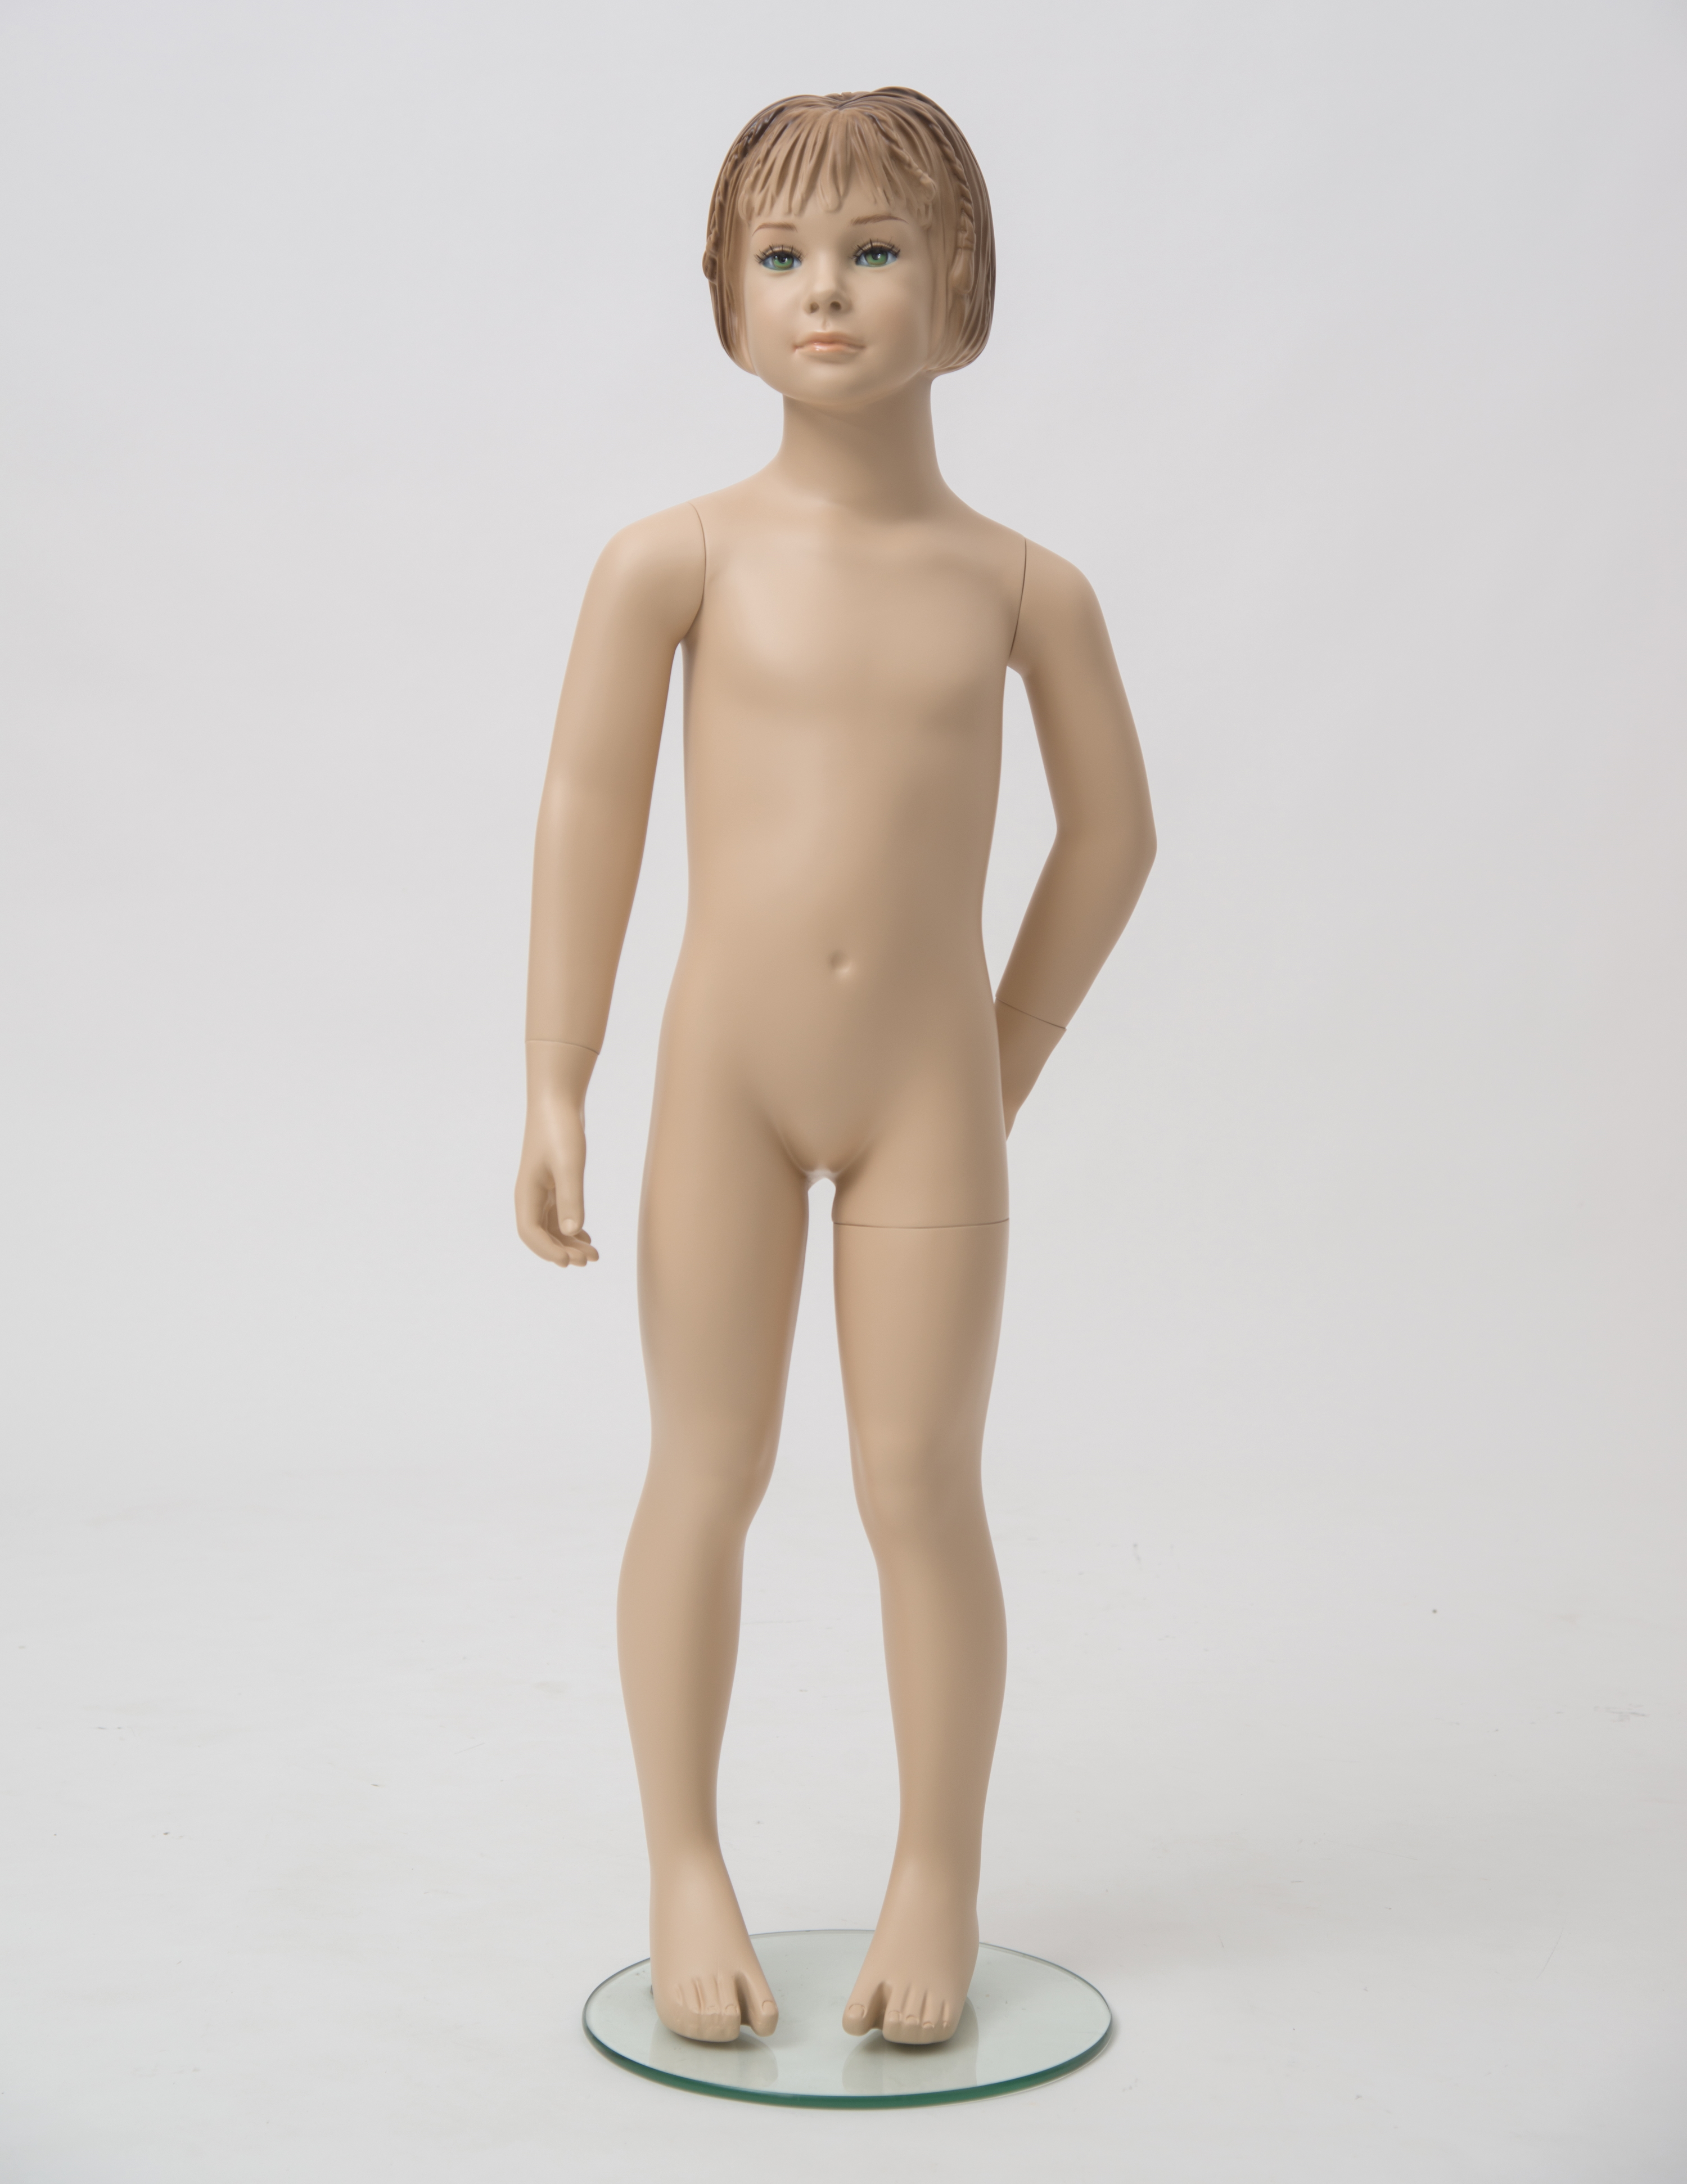 Schaufensterfigur "Bodysculpt" EVO2 Mädchen 4 Jahre hautfarbe